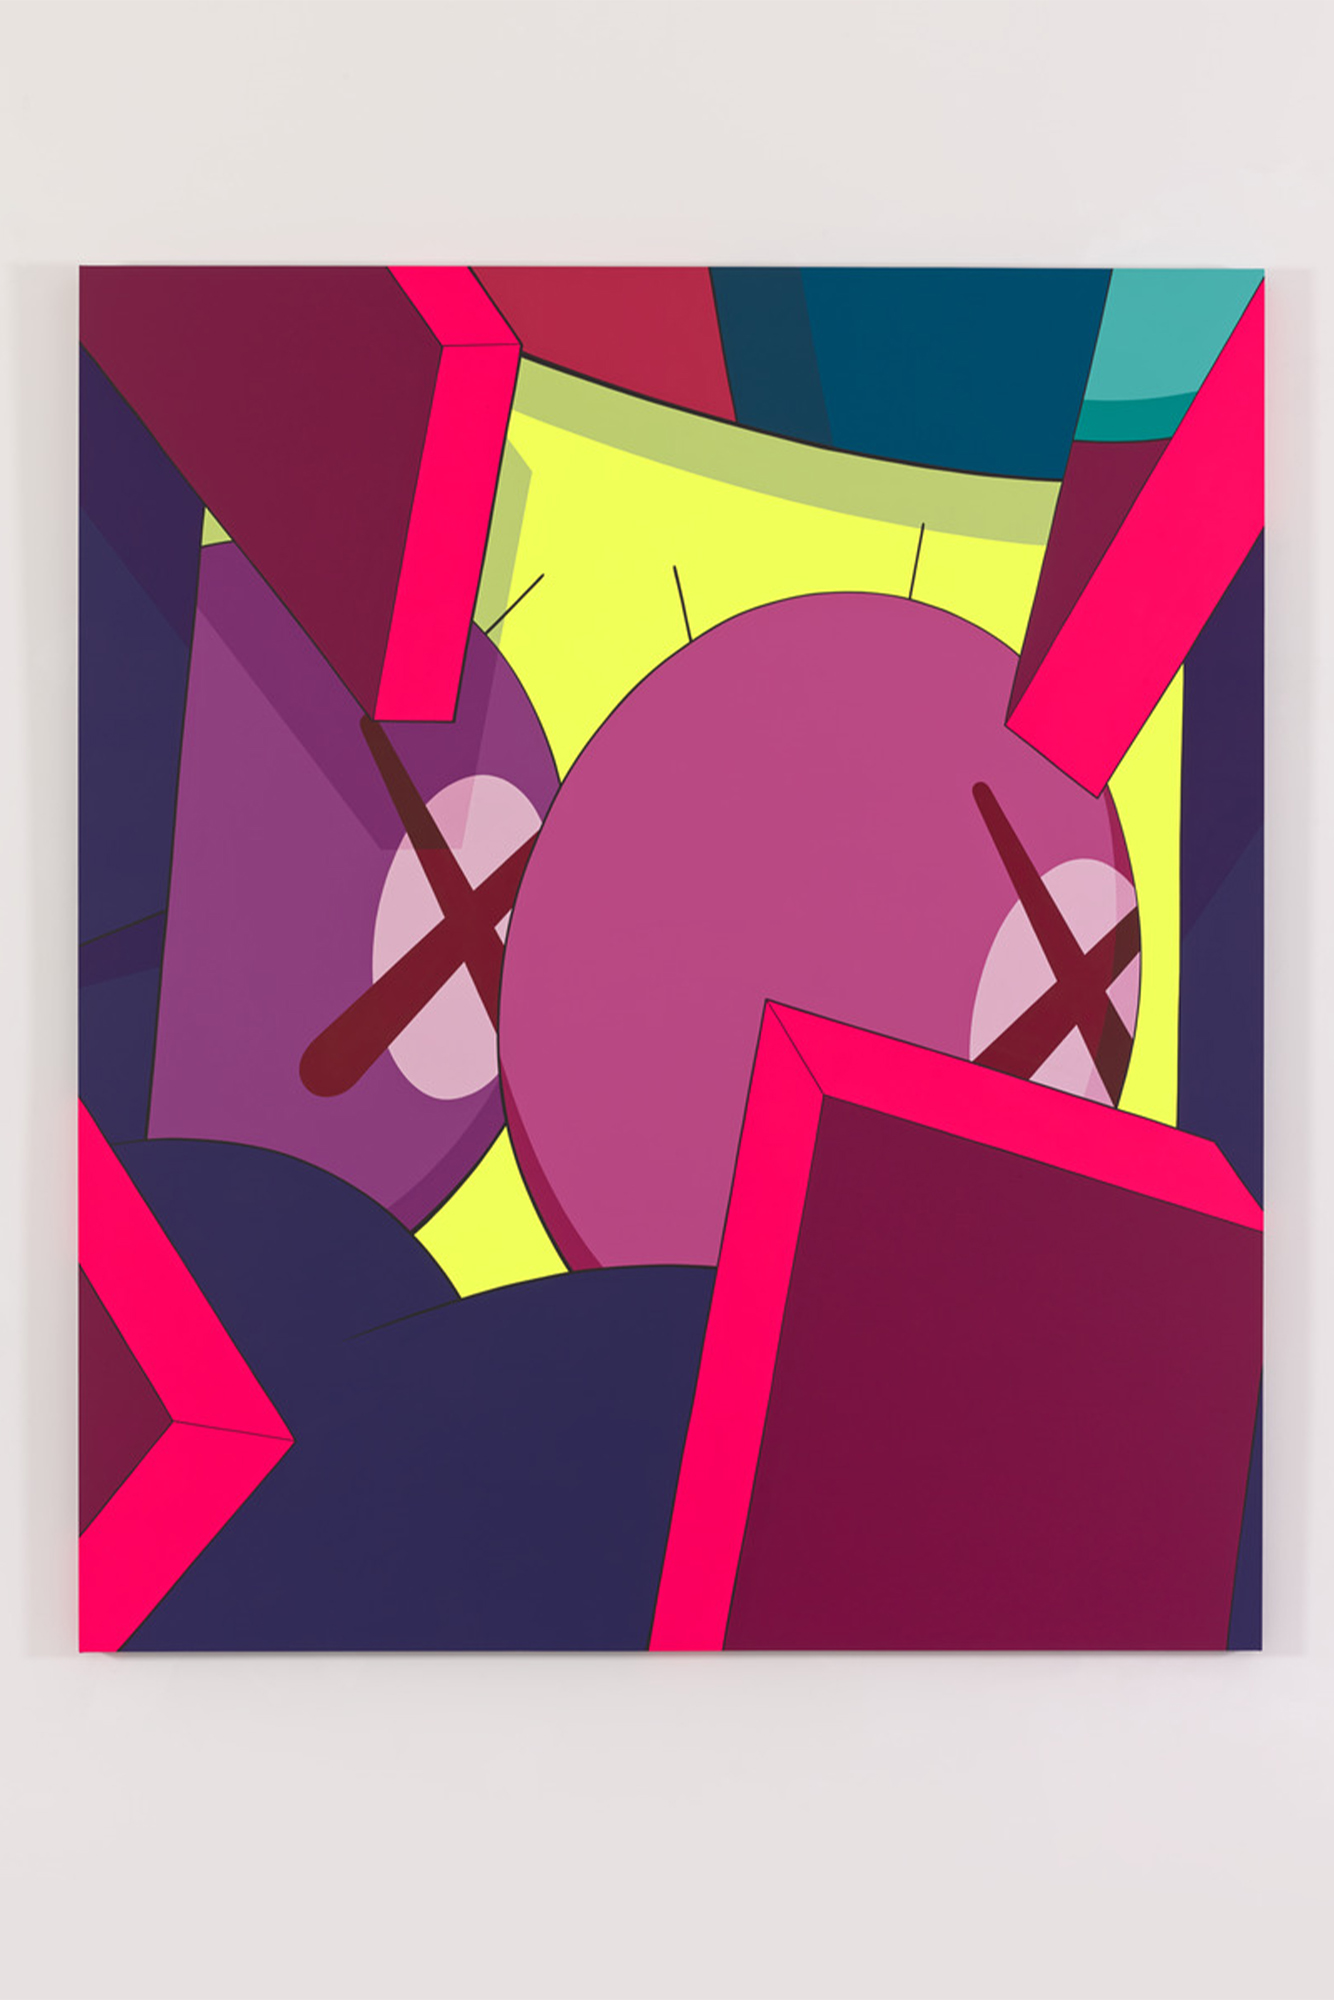 KAWS. UNTITLED (BAM), 2013. Acrylic on canvas, 213.4 × 182.9 cm. © KAWS.